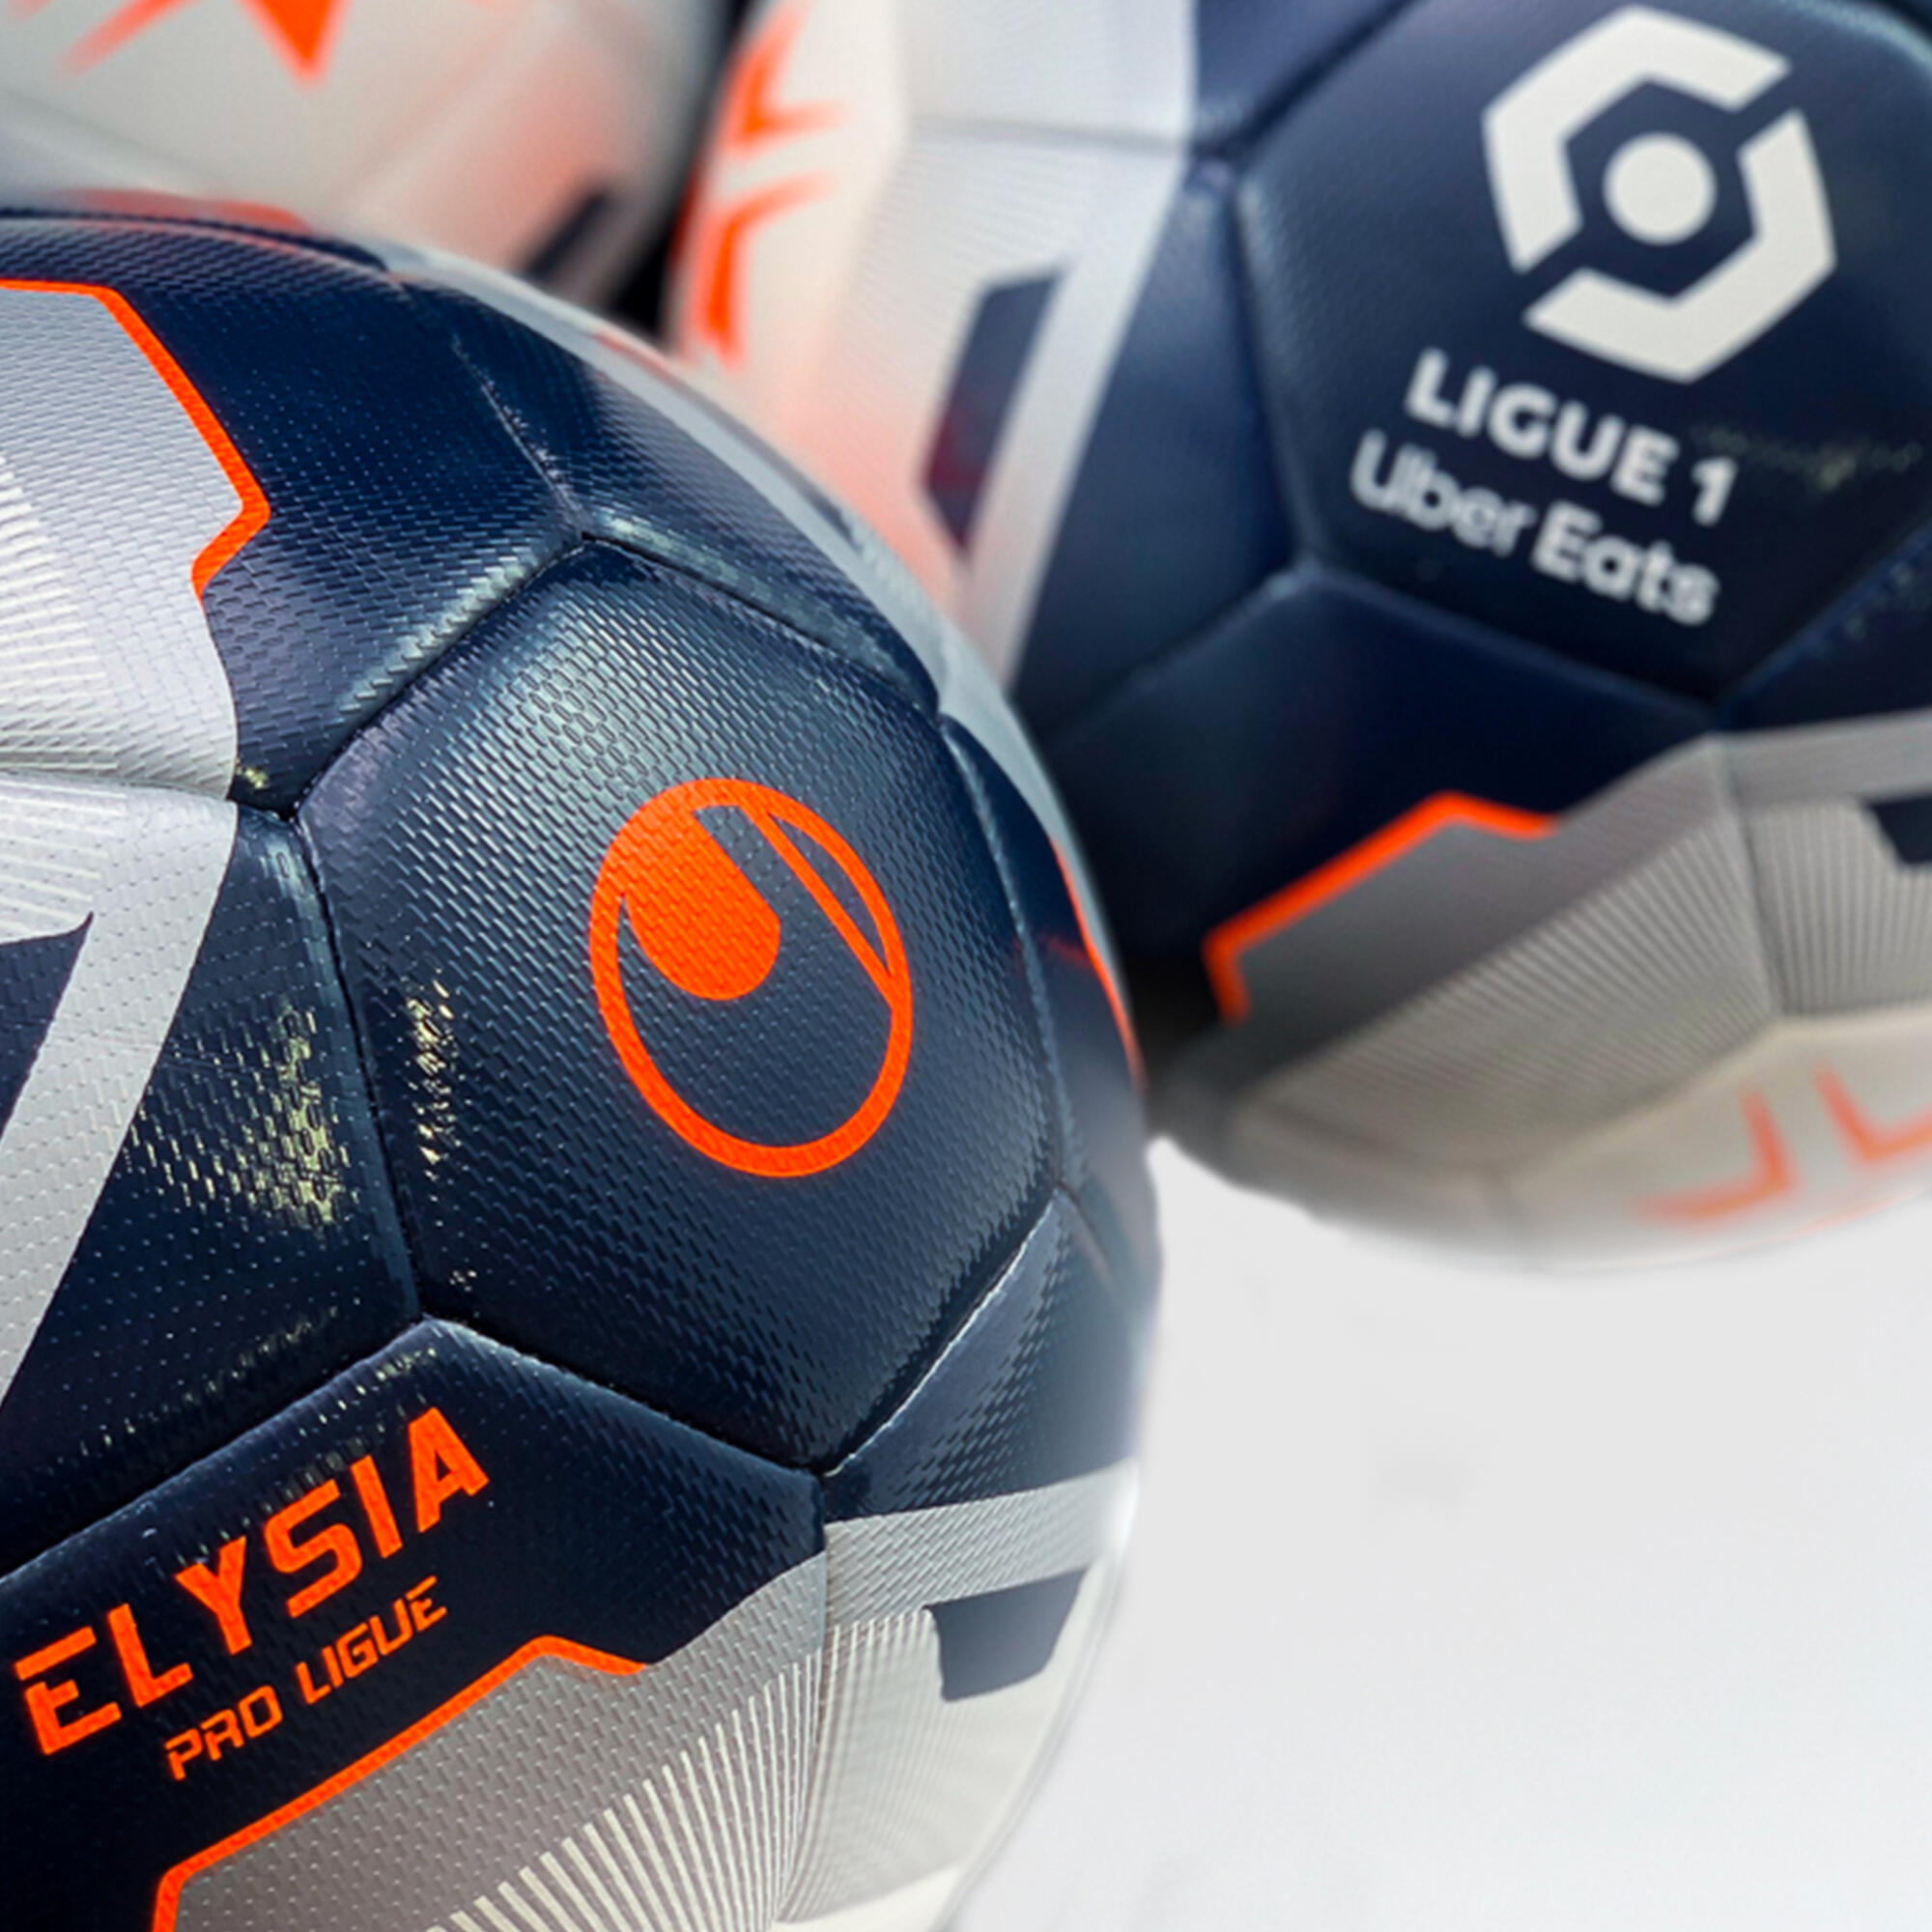 Football Ball Uhlsport Elysia ProLigue Ligue 1 3/3